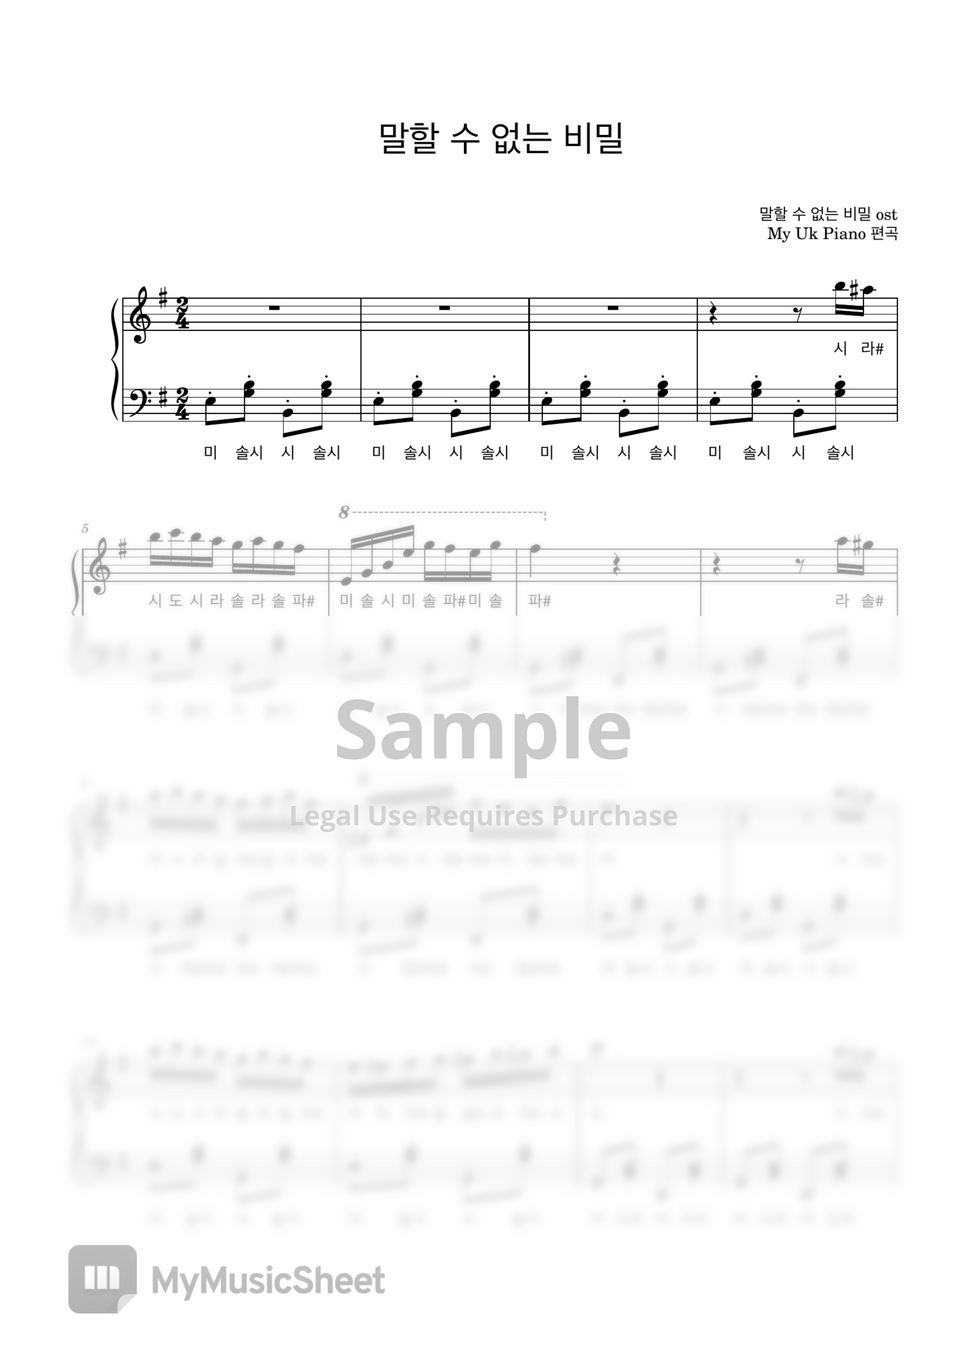 말할 수 없는 비밀 OST - 말할 수 없는 비밀 OST- 4곡모음집(계이름) (Secret, 쇼팽왈츠, 연탄곡, 흑건 백건) by My Uk Piano